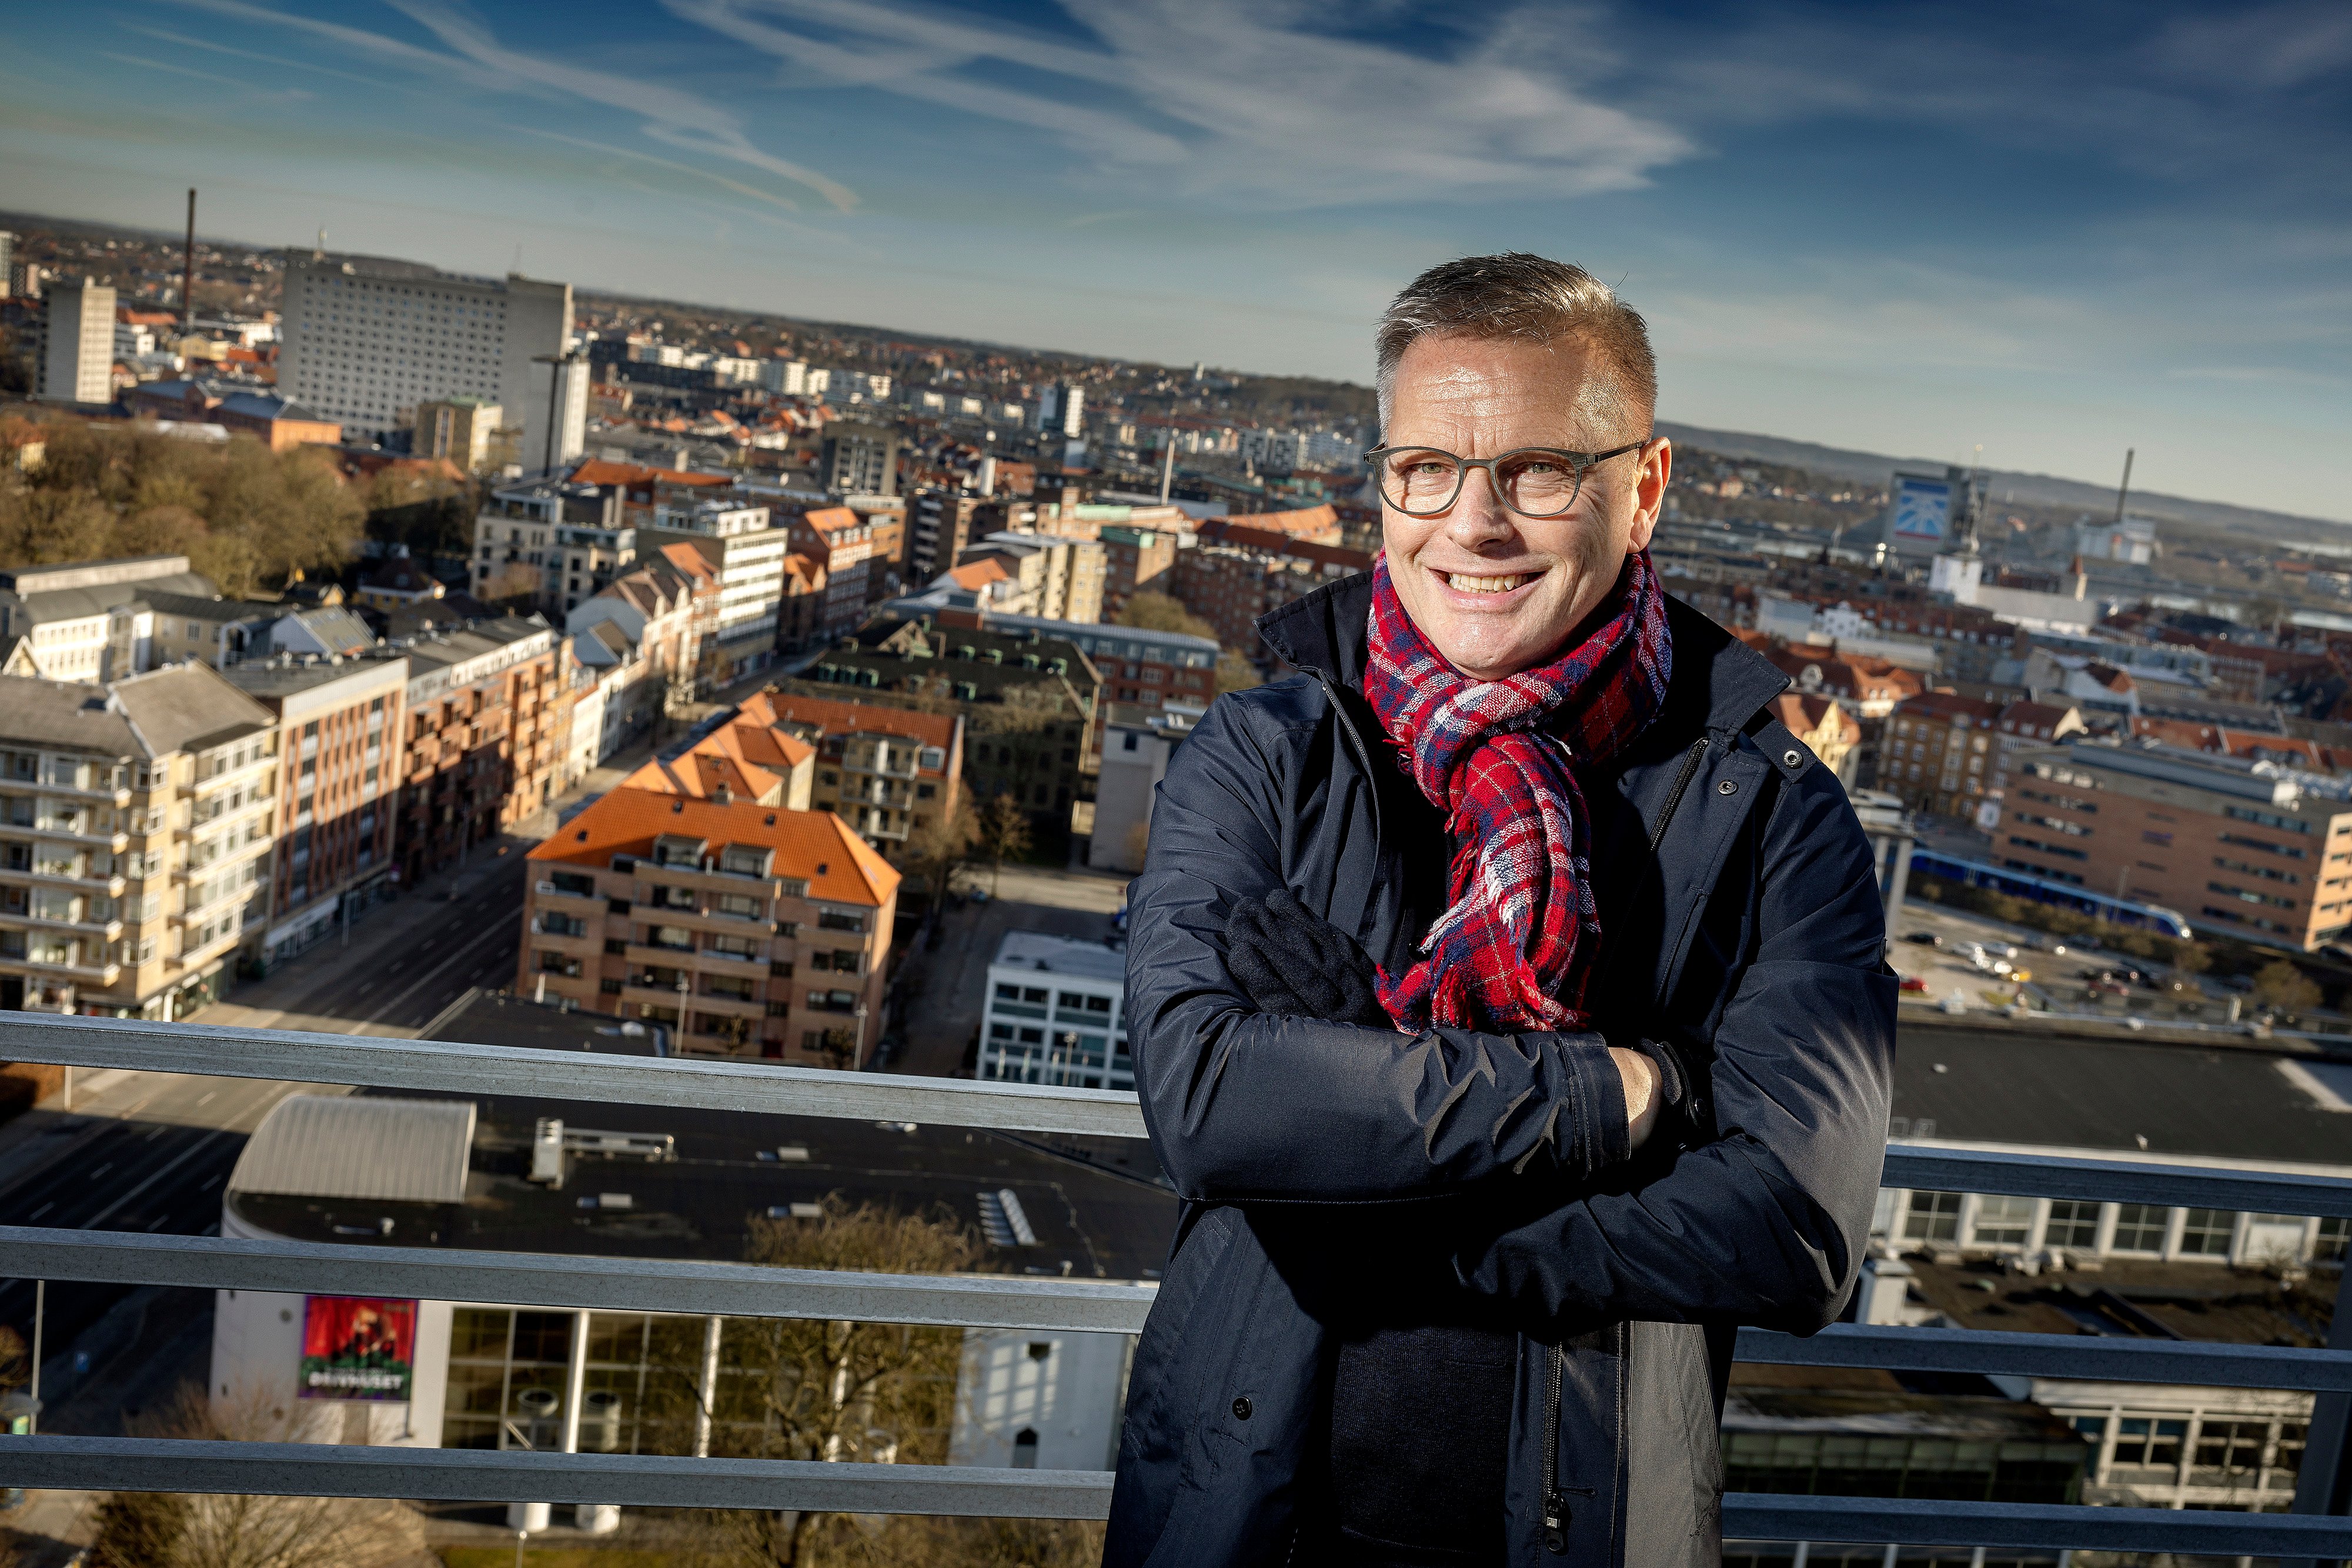 Tidligere minister vil være borgmester i Aalborg